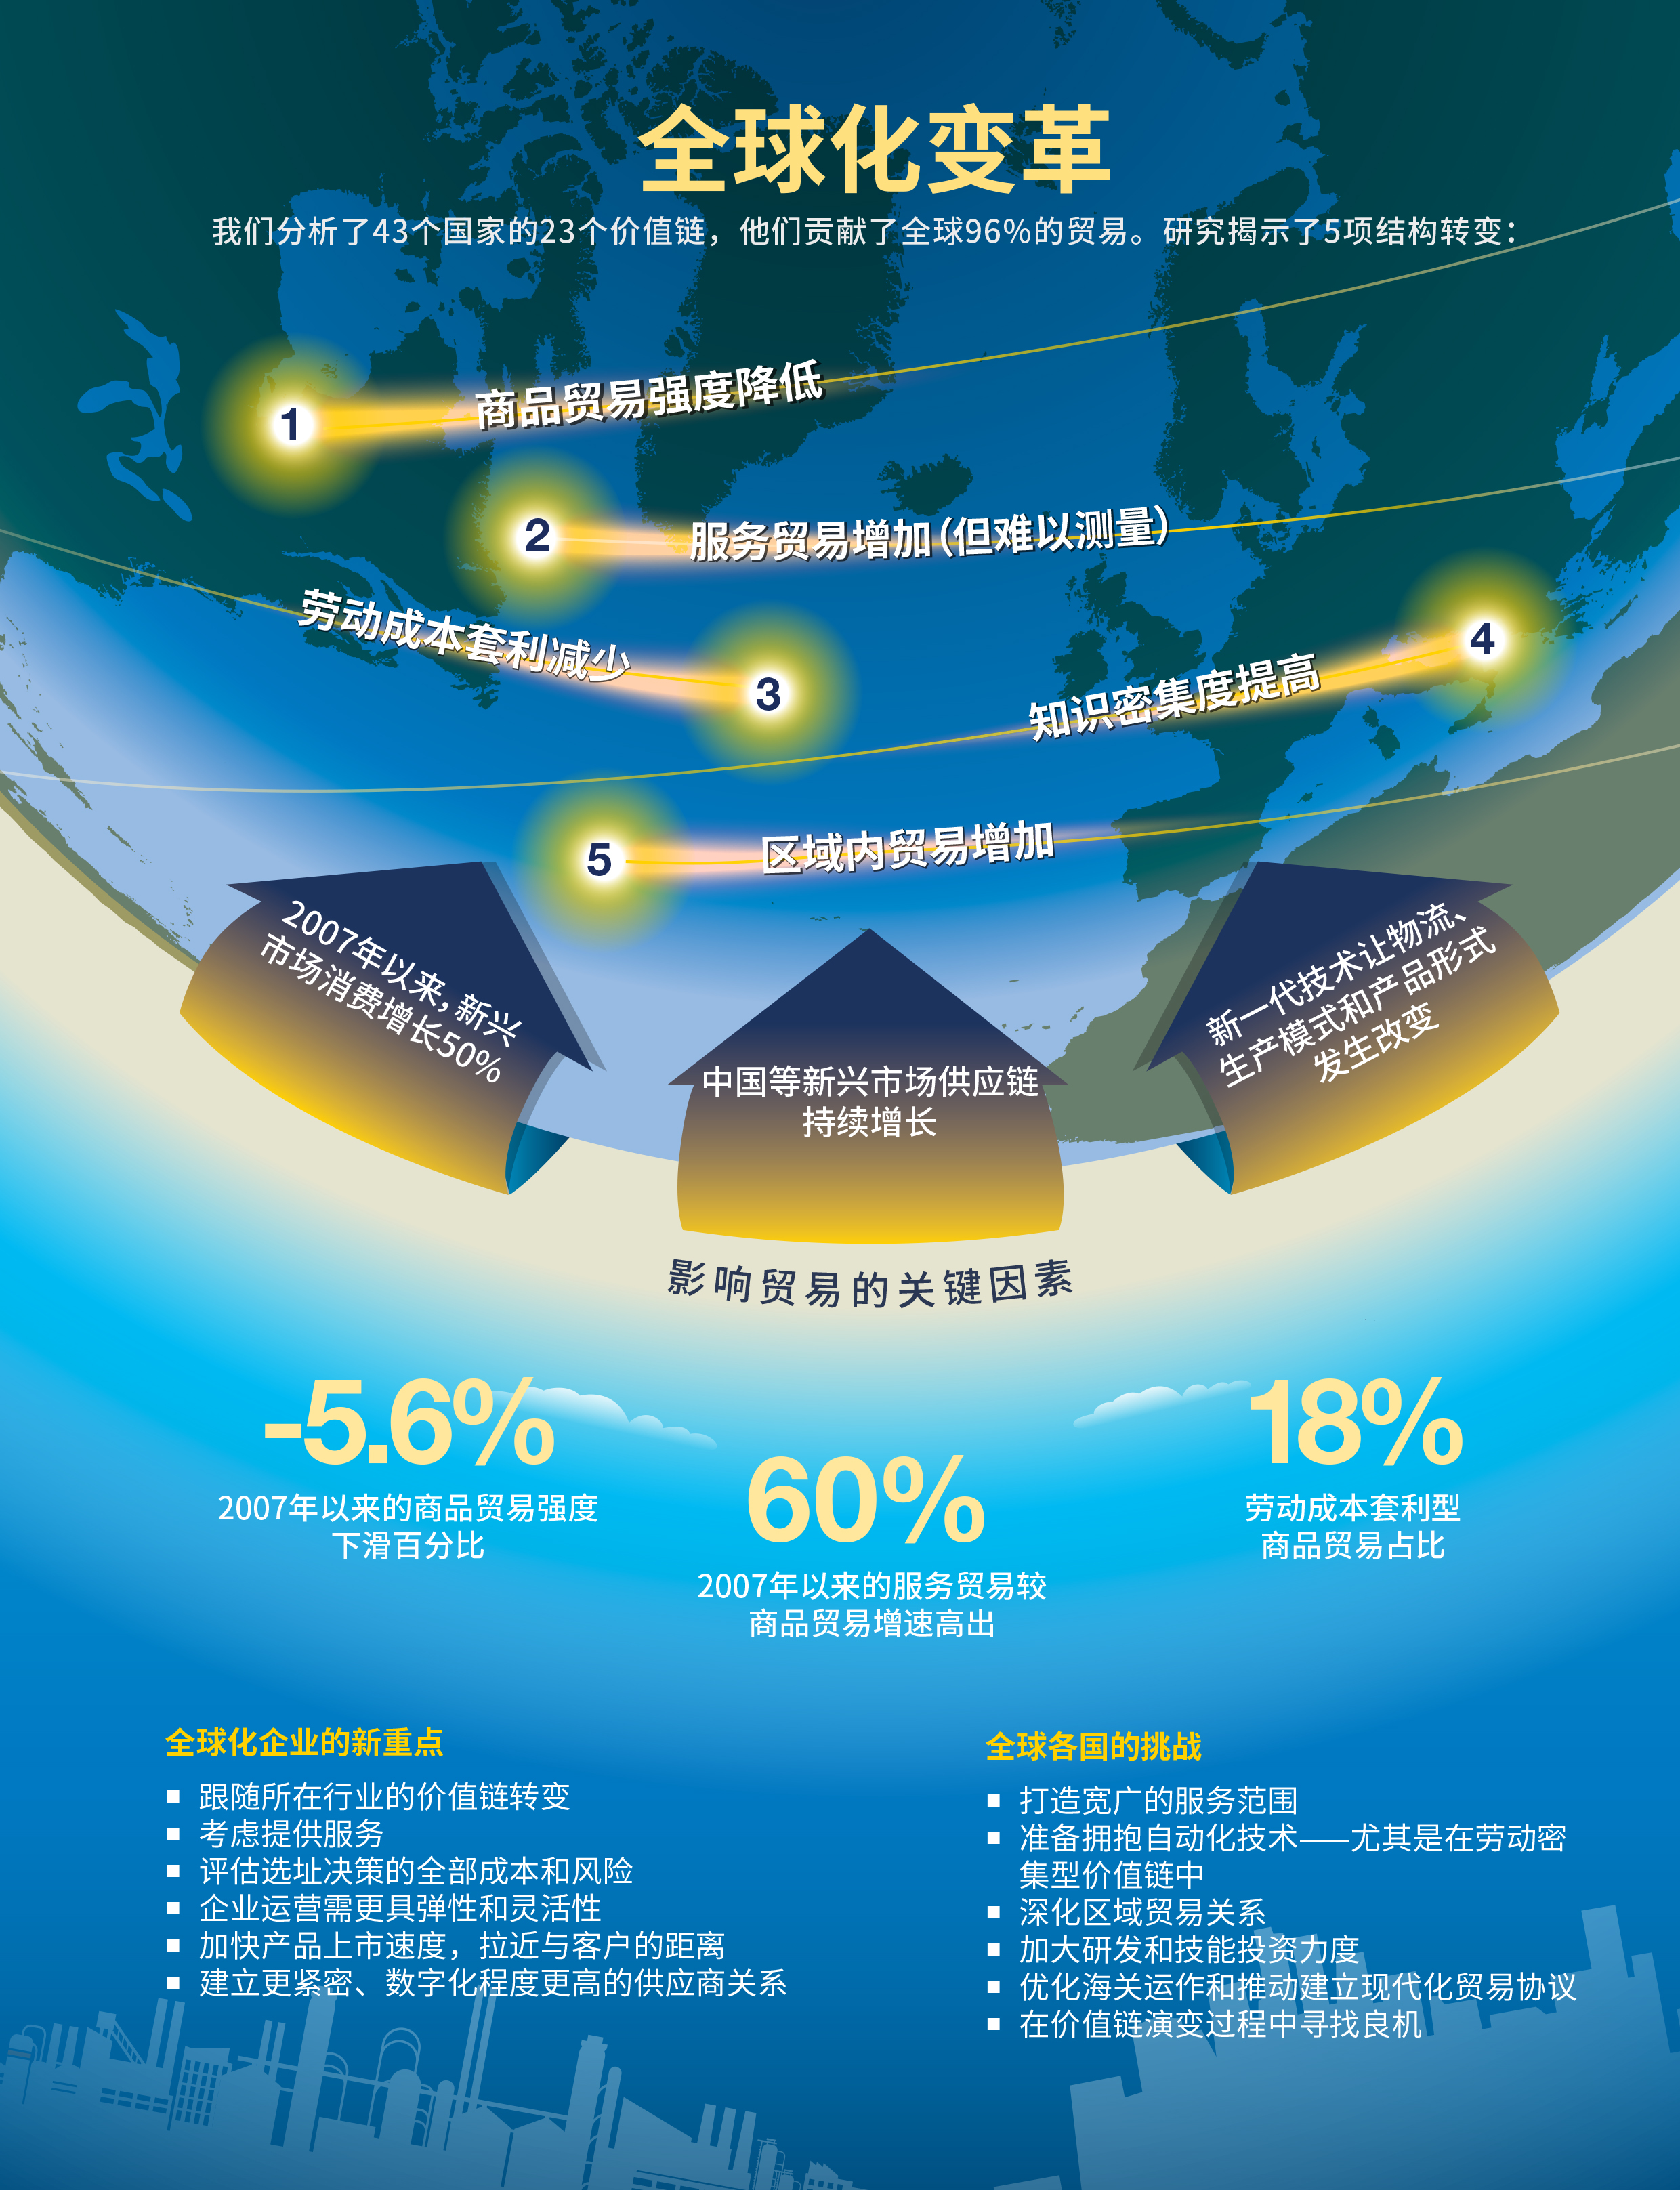 变革中的全球化 贸易与价值链的未来图景 Mckinsey Greater China